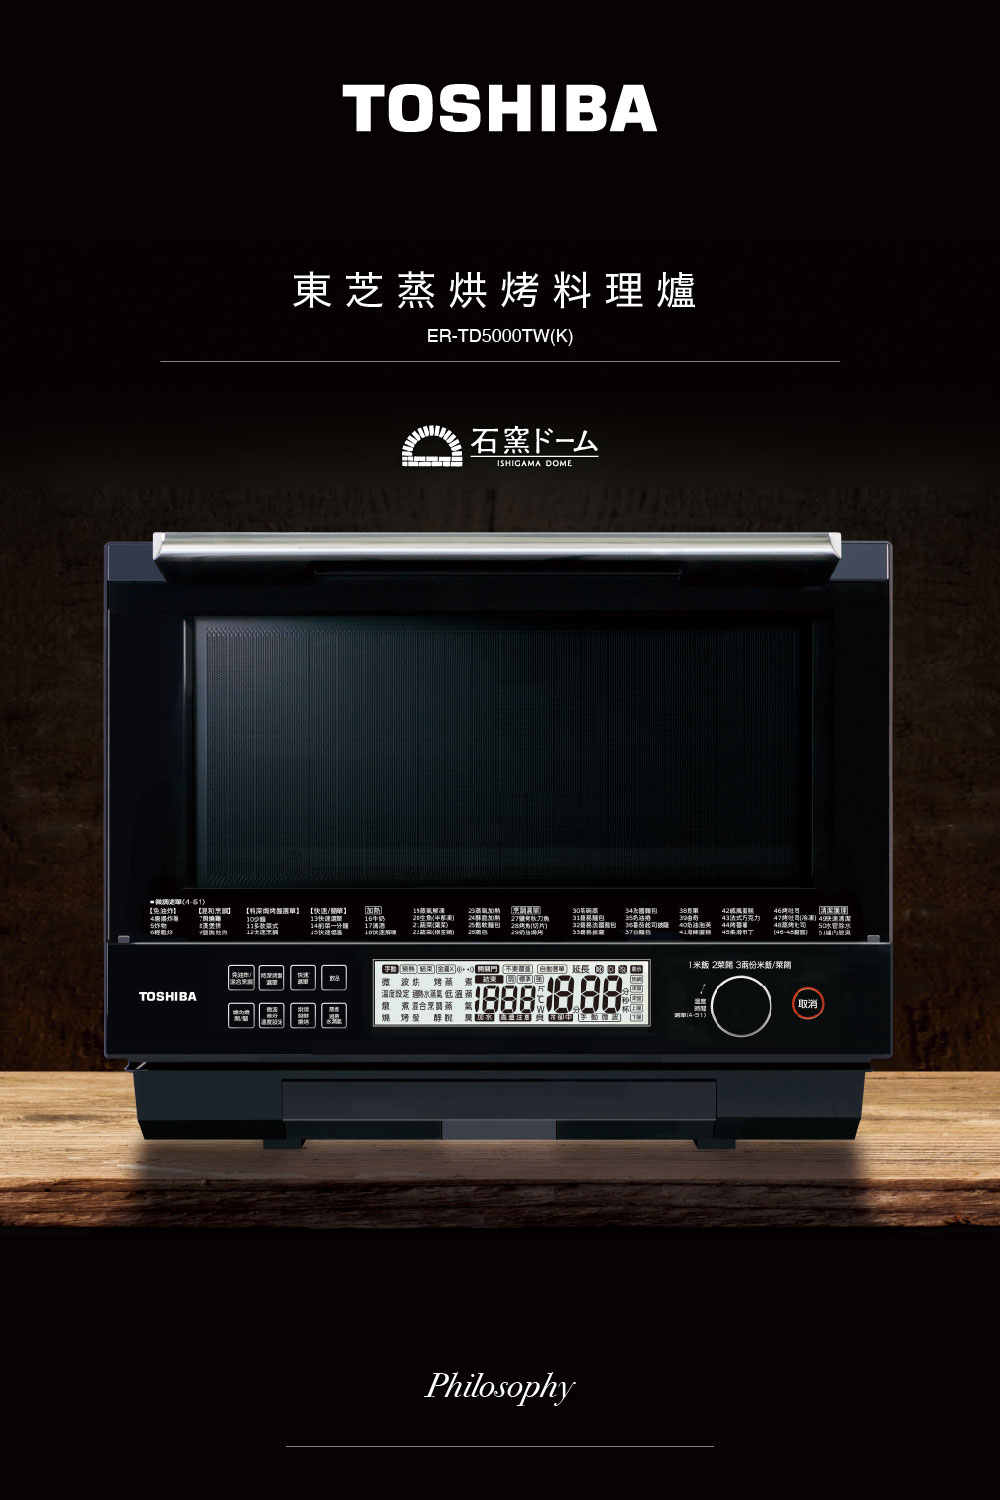 TOSHIBA 東芝 30L蒸烘烤料理爐(ER-TD5000